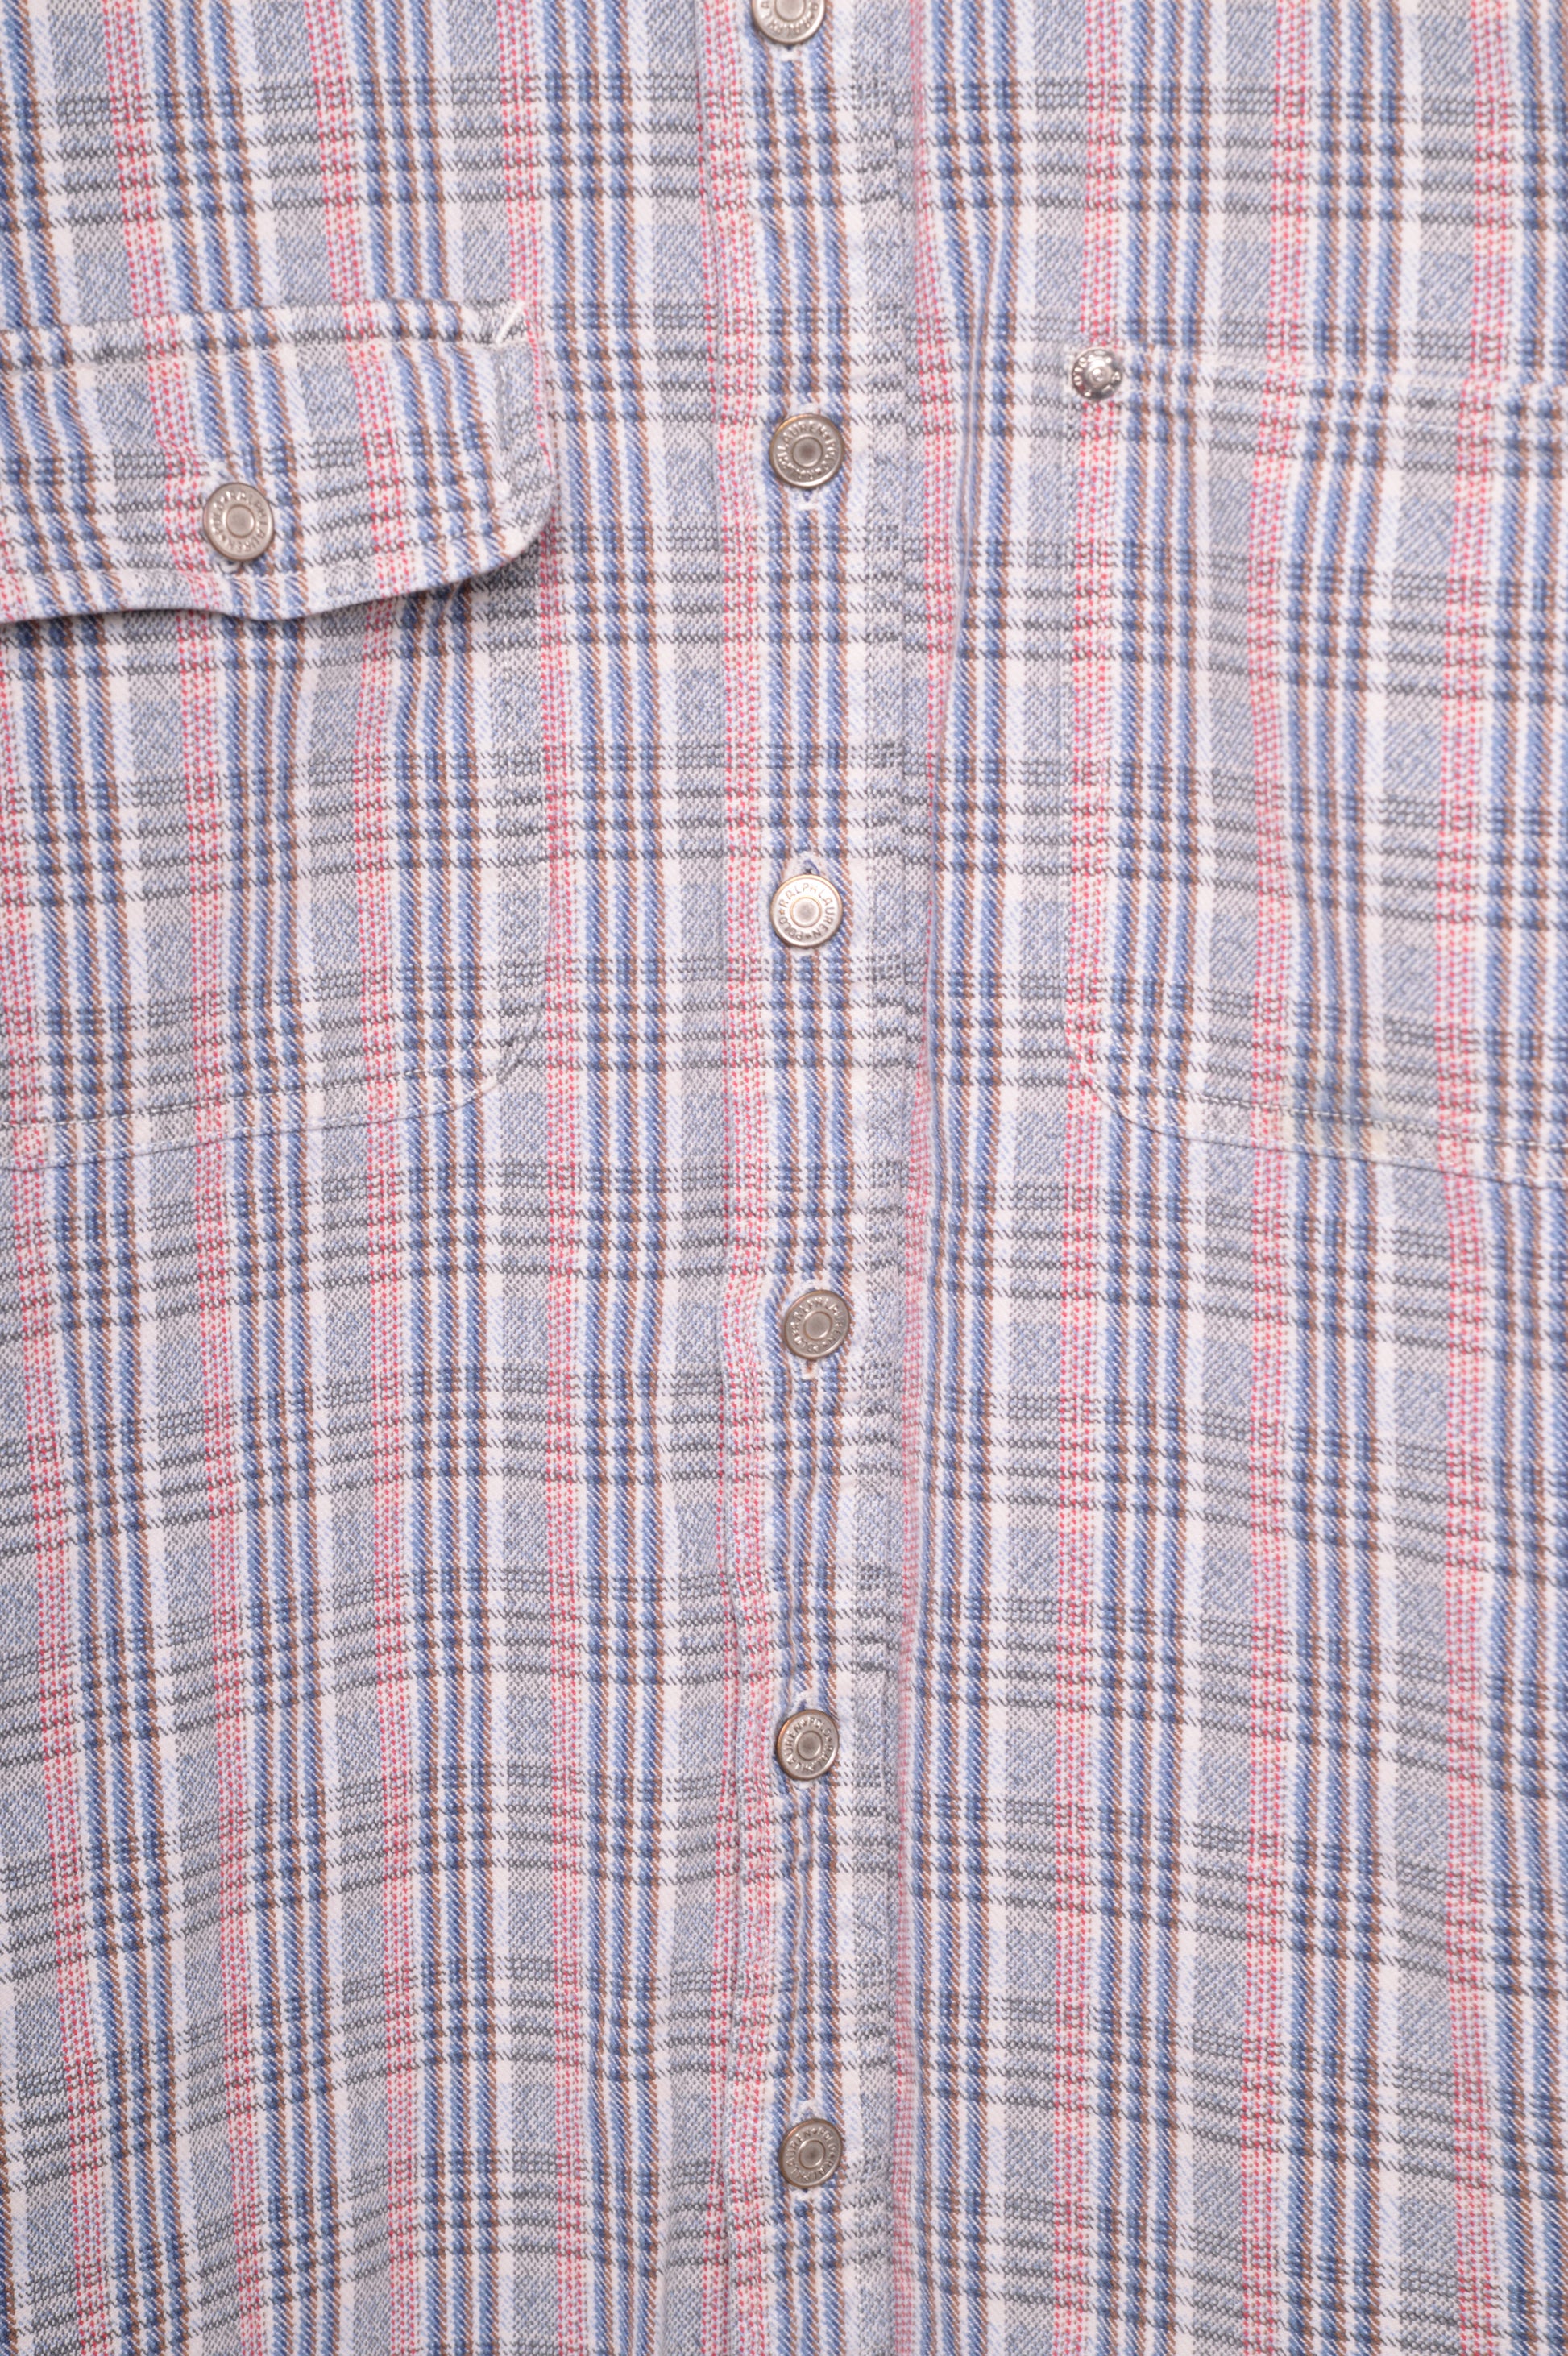 Unisex Vintage Ralph Lauren Plaid Shirt - The Vintage Twin